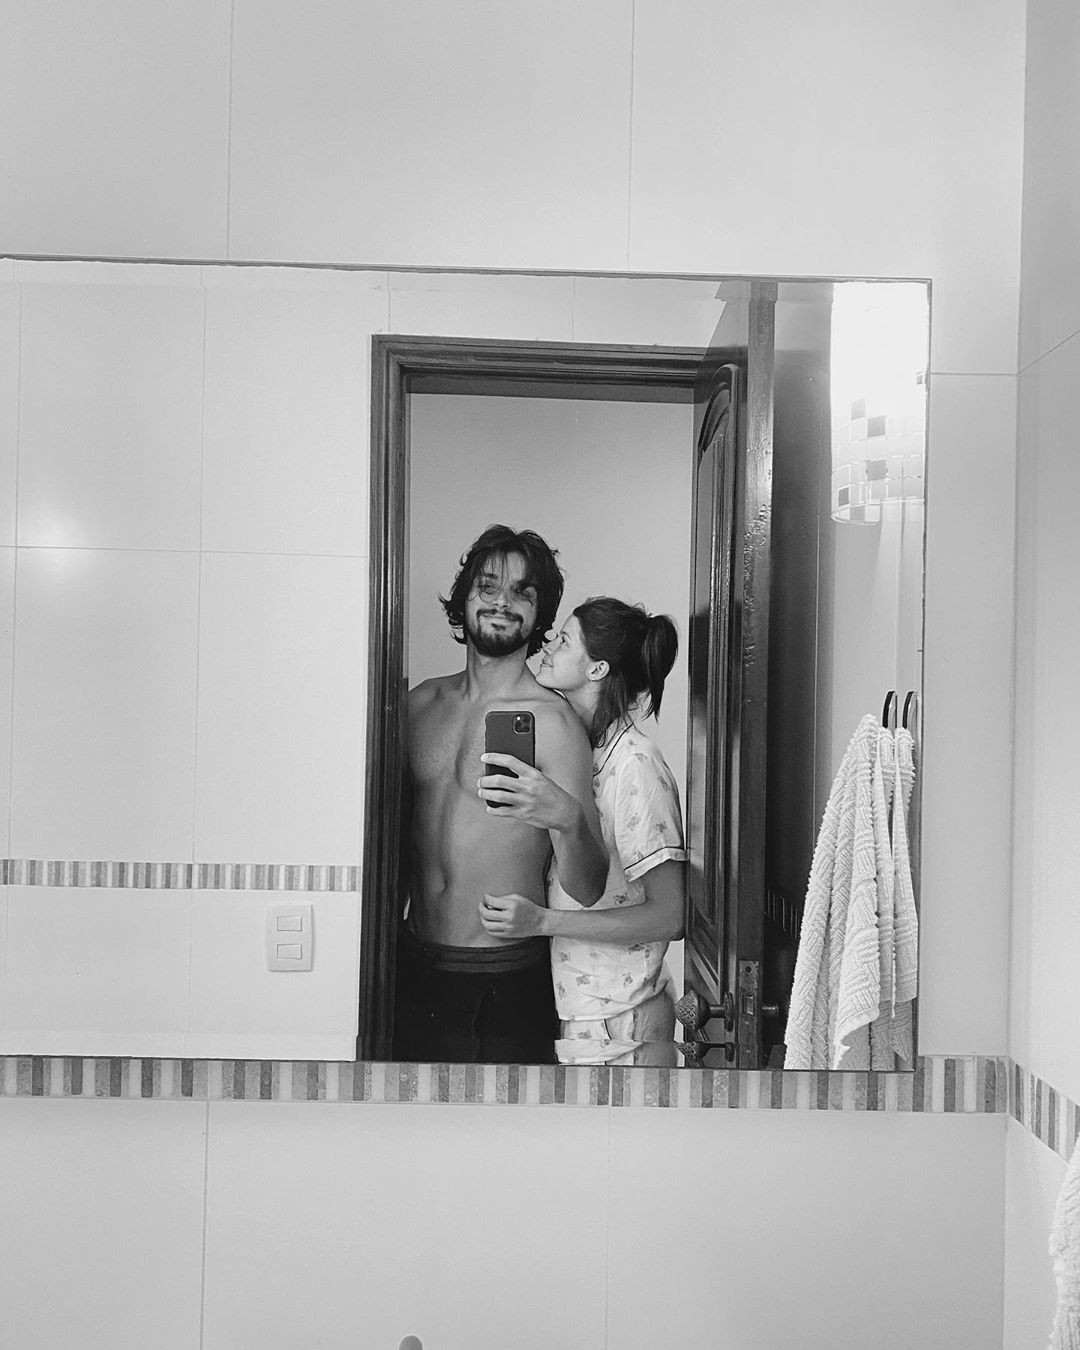 Rodrigo Simas e Agatha Moreira fazem selfie no espelho do banheiro (Foto: Reprodução/Instagram)